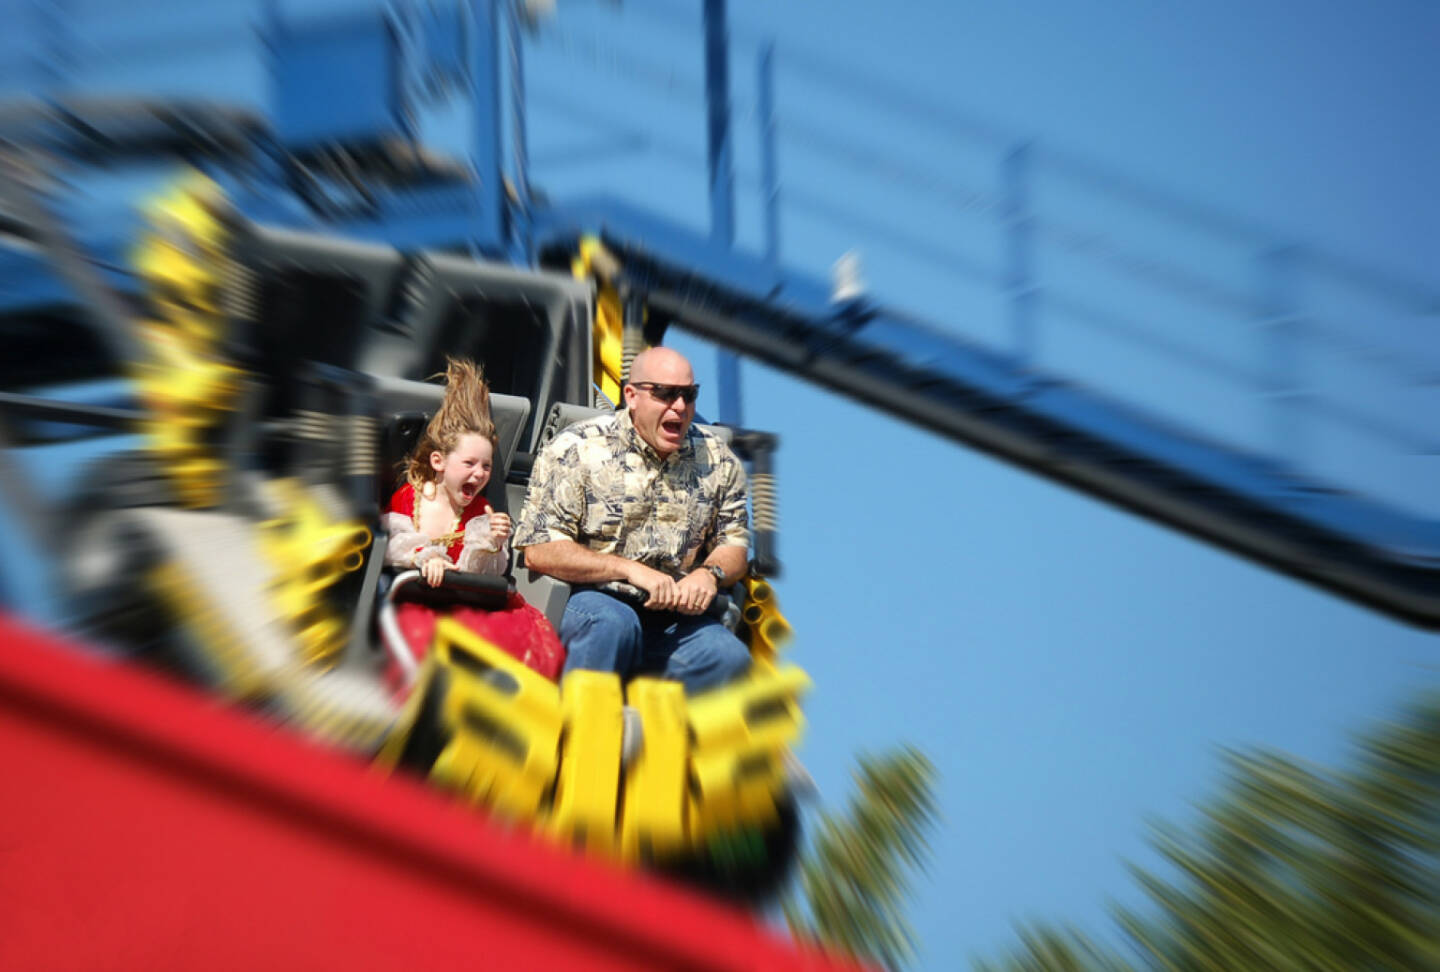 Achterbahn, fahren, Angst, Schrecken, Schrei, Freude, Spass, auf und ab, http://www.shutterstock.com/de/pic-9806476/stock-photo-father-and-daughter-having-fun-on-rollercoaster.html 